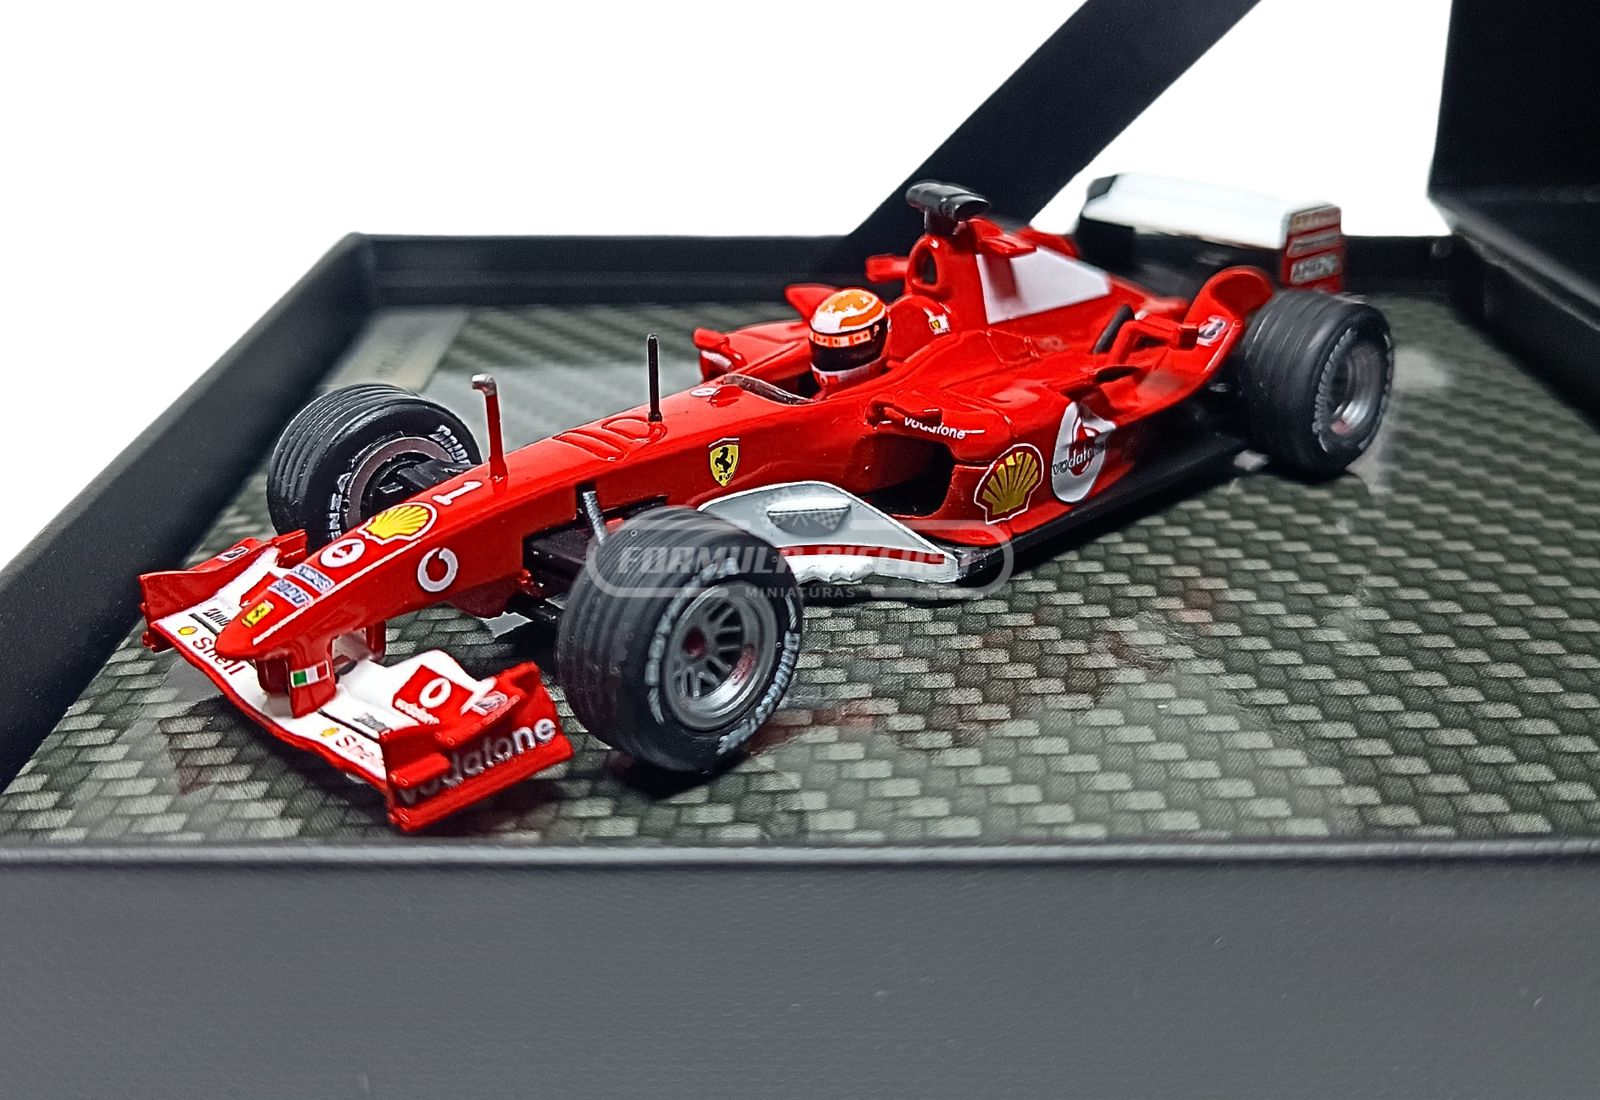 Miniatura de carro Ferrari F2004 #1 M. Schumacher, 1º lugar GP do Japão, Campeão Mundial F1 2004, escala 1:43, marca IXO